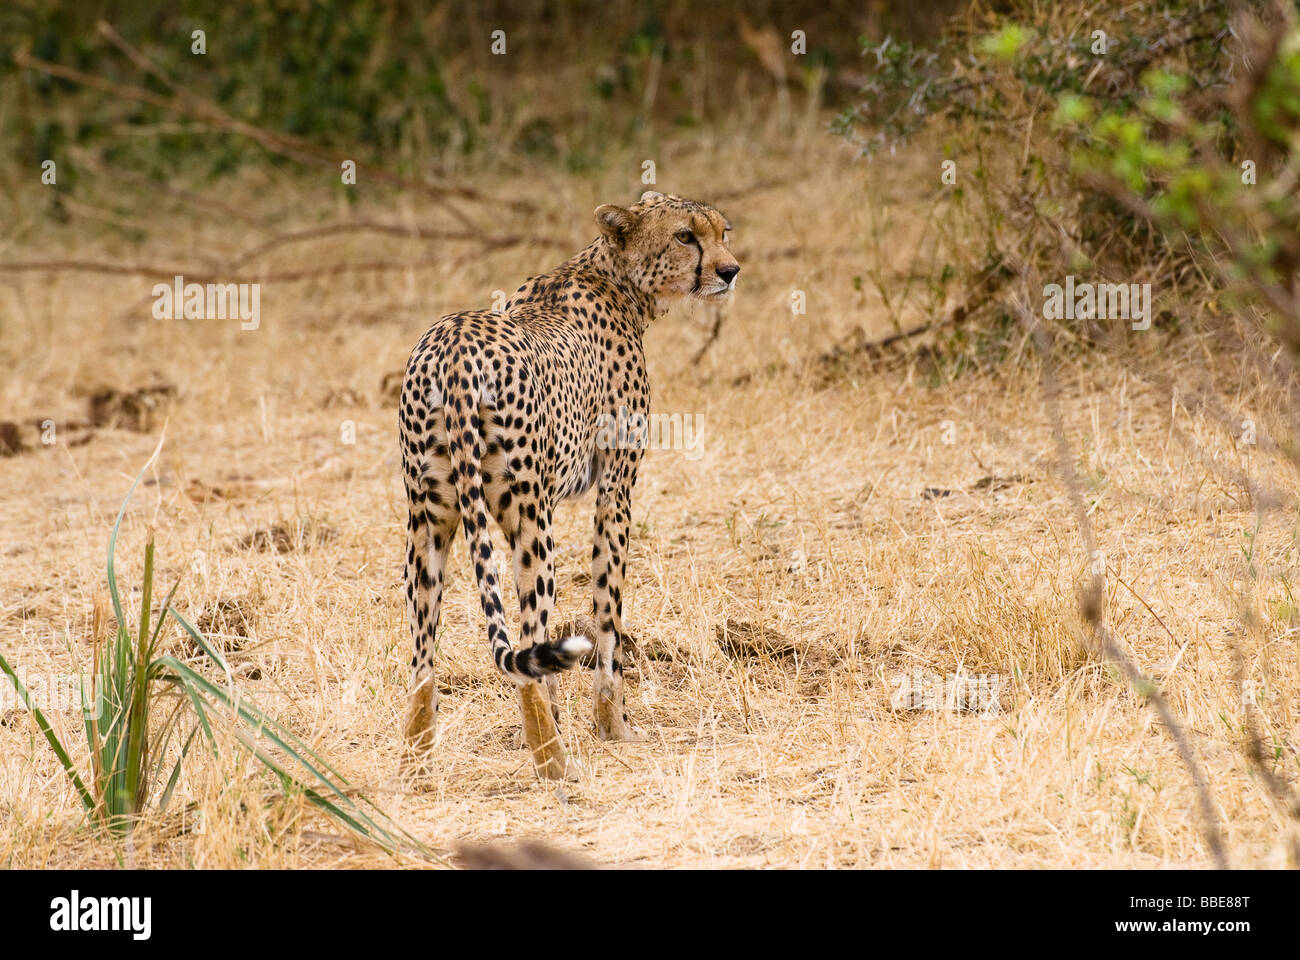 Le guépard, Acinonyx jubatus, Réserve nationale de Samburu, Kenya Afrique de l'Est Banque D'Images